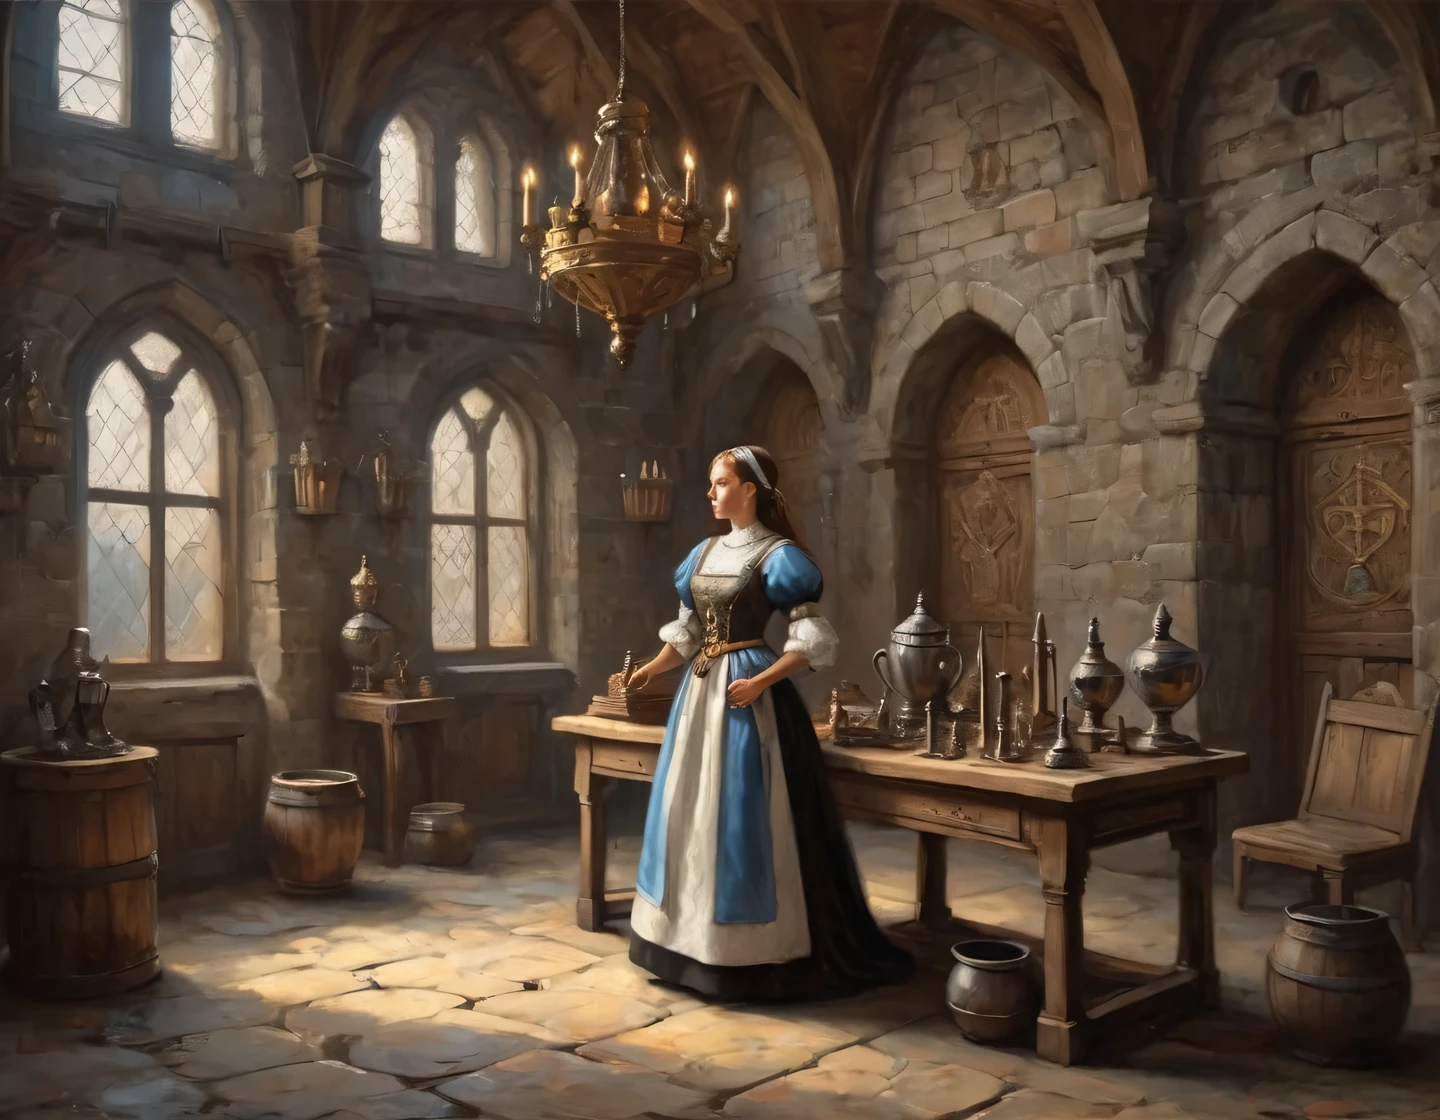 Uma fotografia antiga, uma garota ciborgue vestida de empregada doméstica está construindo no salão de um castelo medieval, mobiliário medieval, troféus e armas nas paredes, heráldica, realista